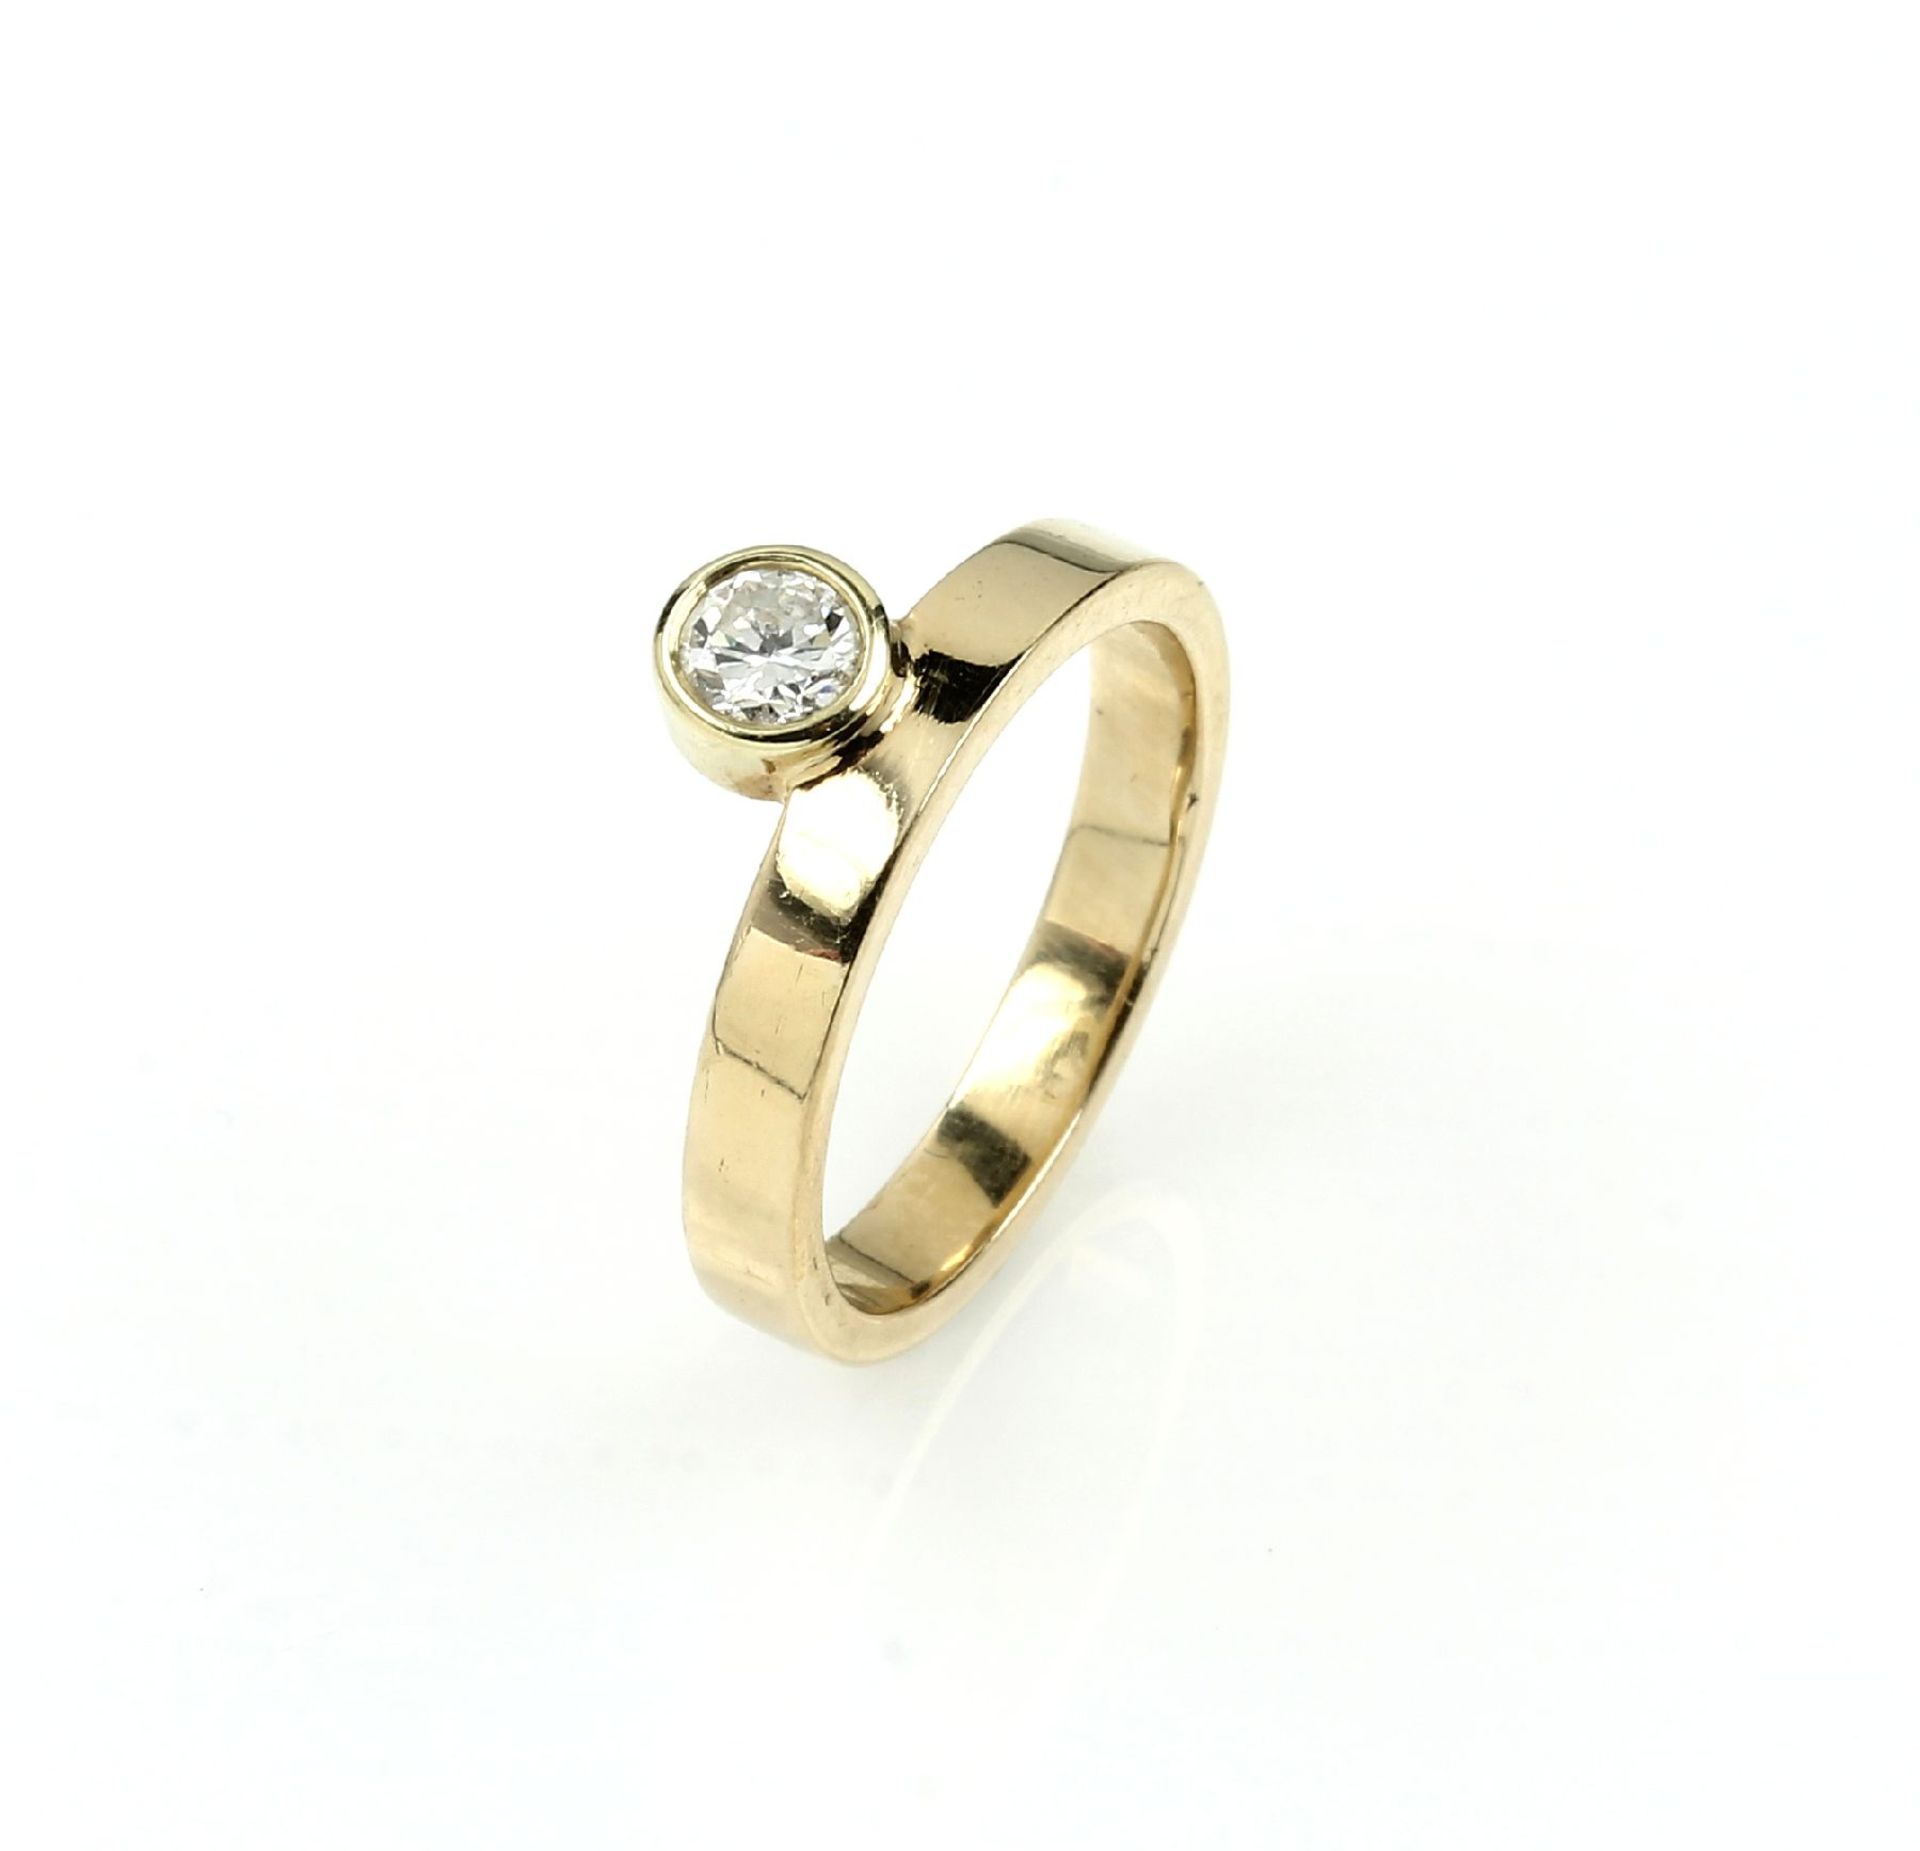 14 kt Gold Ring mit Brillant, GG 585/000, Brillant ca. 0.18 ct Weiß/si, seitl. gefasst, RW 47.5, ca.